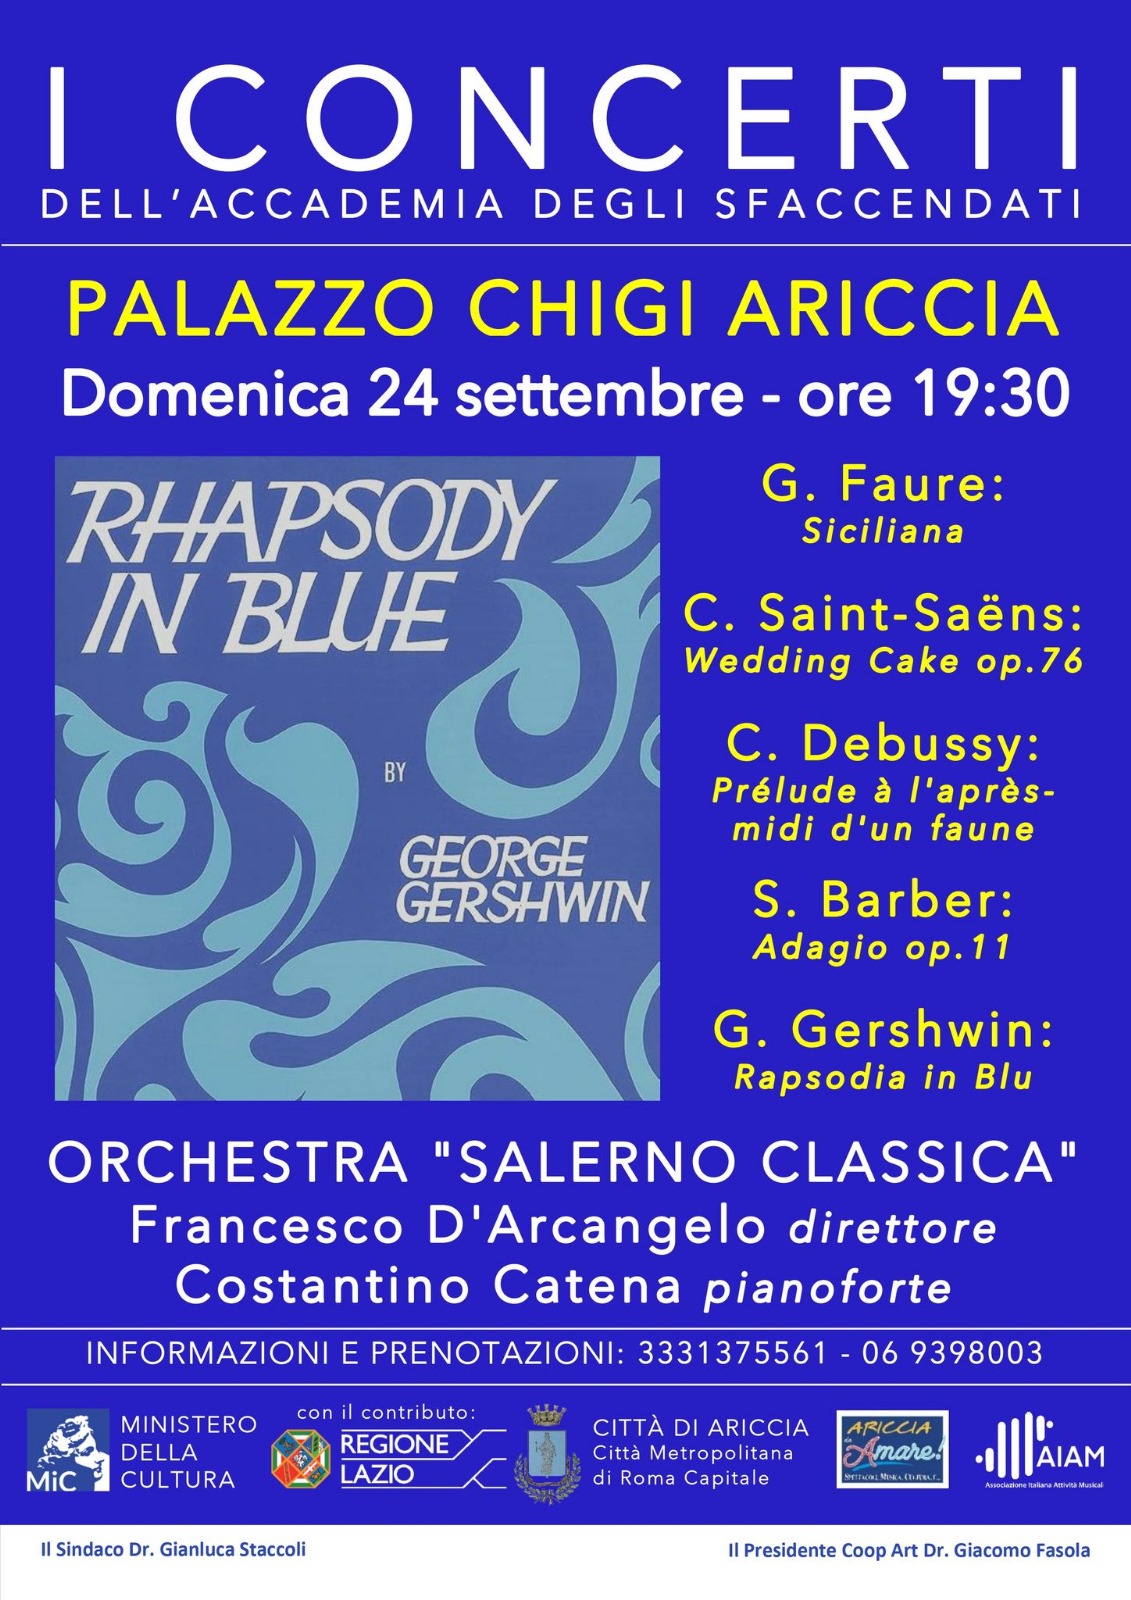 Ariccia: Rapsodia in blu di Gershwin inaugura ciclo autunnale de “I Concerti dell’Accademia degli Sfaccendati” a Palazzo Chigi